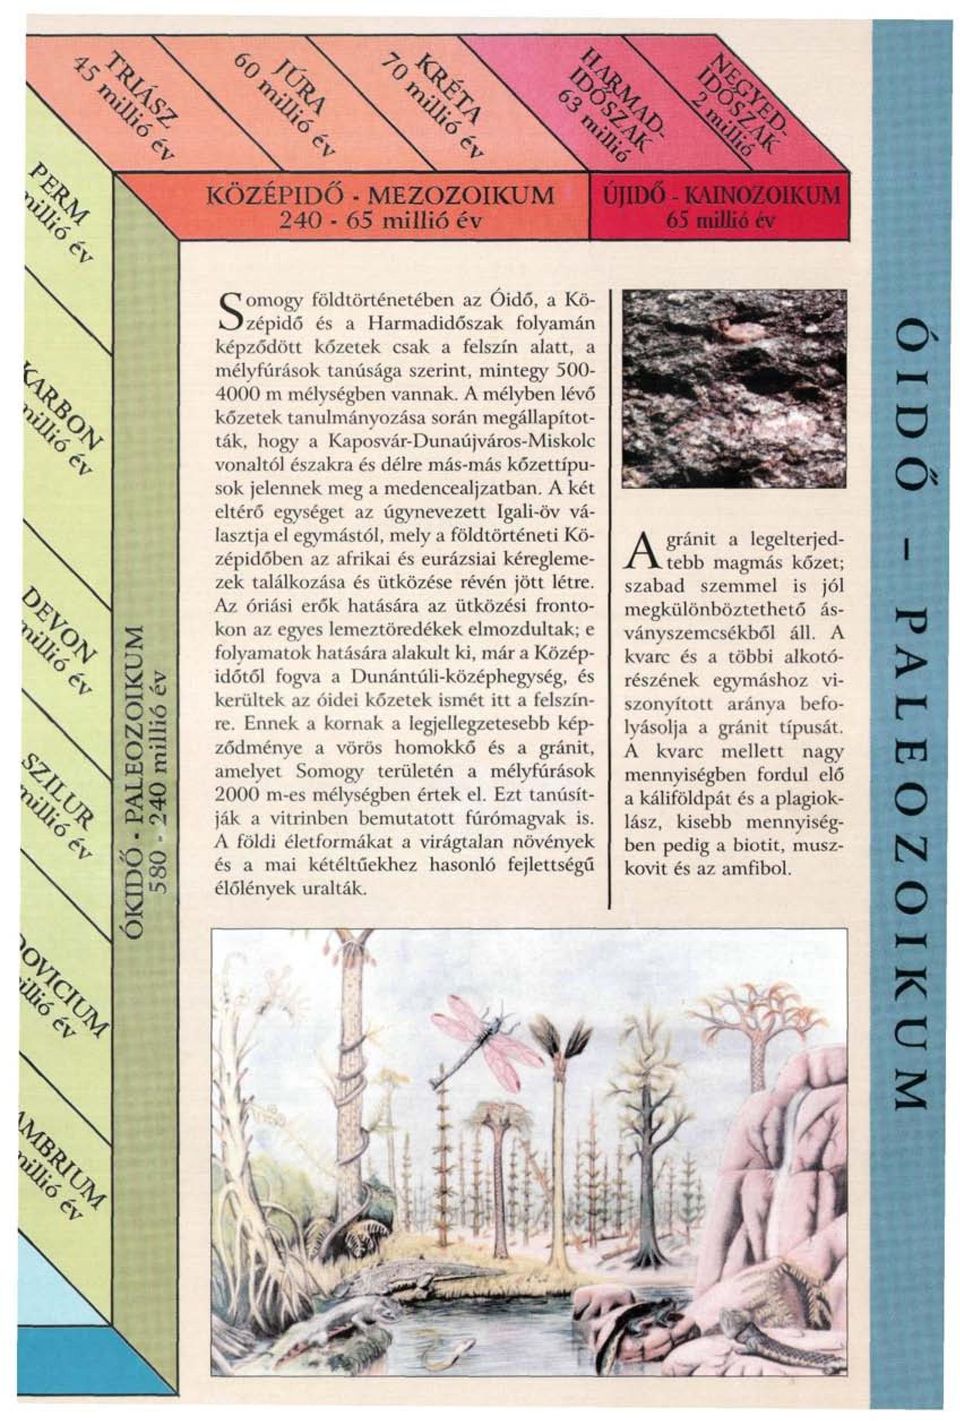 A mélyben lévő kőzetek tanulmányozása során megállapították, hogy a Kaposvár-Dunaújváros-Miskolc vonaltól északra és délre más-más kőzettípusok jelennek meg a medencealjzatban.